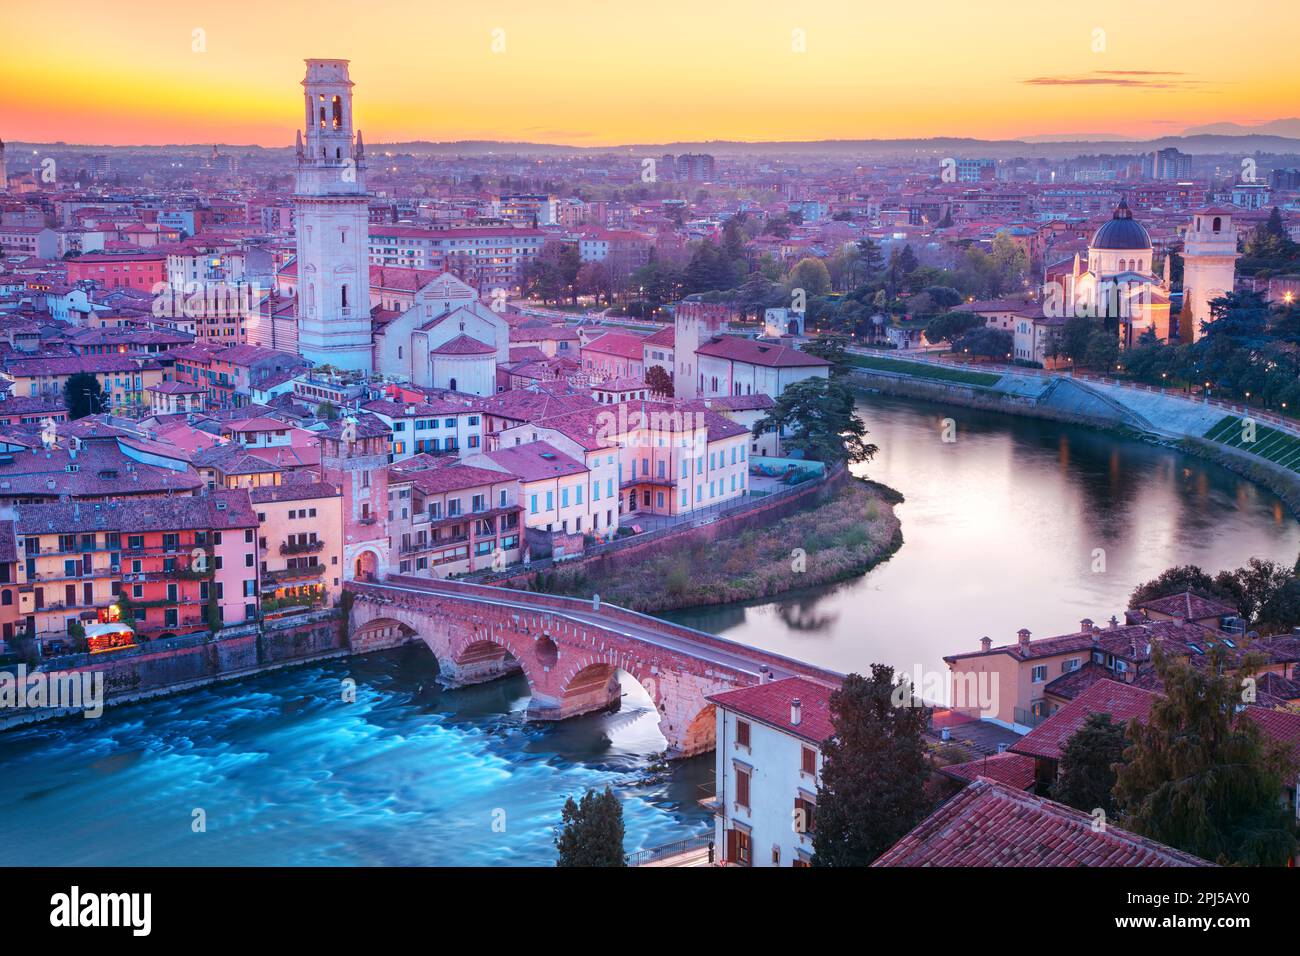 Verona, Italien. Unvergleichliches Stadtbild der berühmten italienischen Stadt Verona bei Sonnenuntergang. Stockfoto